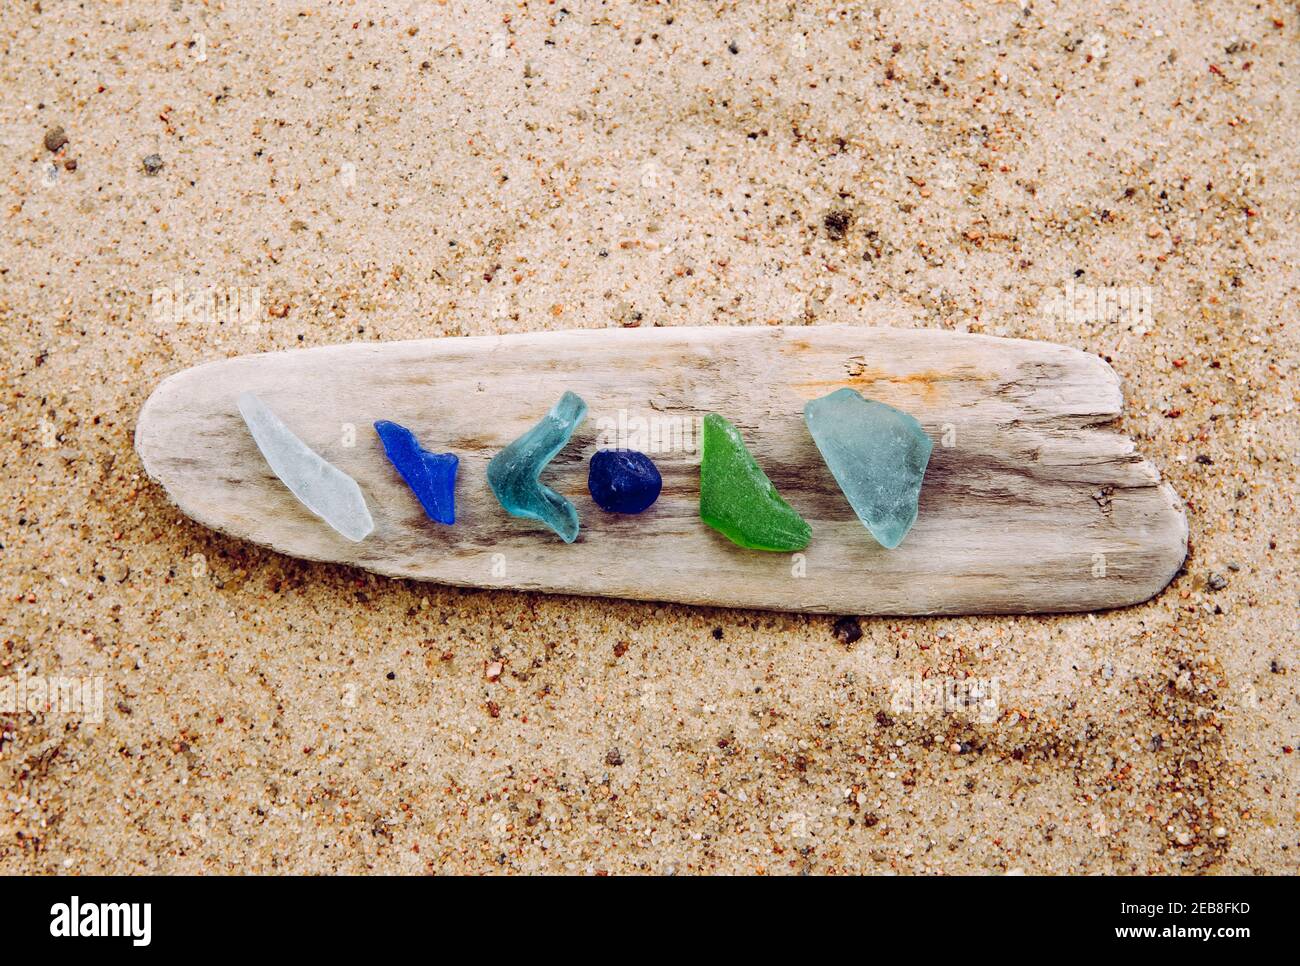 Verschiedene Farben blau, grün, weißes Meerglas oder Strandglas auf Treibholz im Strand auf Sand. Glas war einmal Flaschenstücke und jetzt ist das Meer gestolpert. Stockfoto